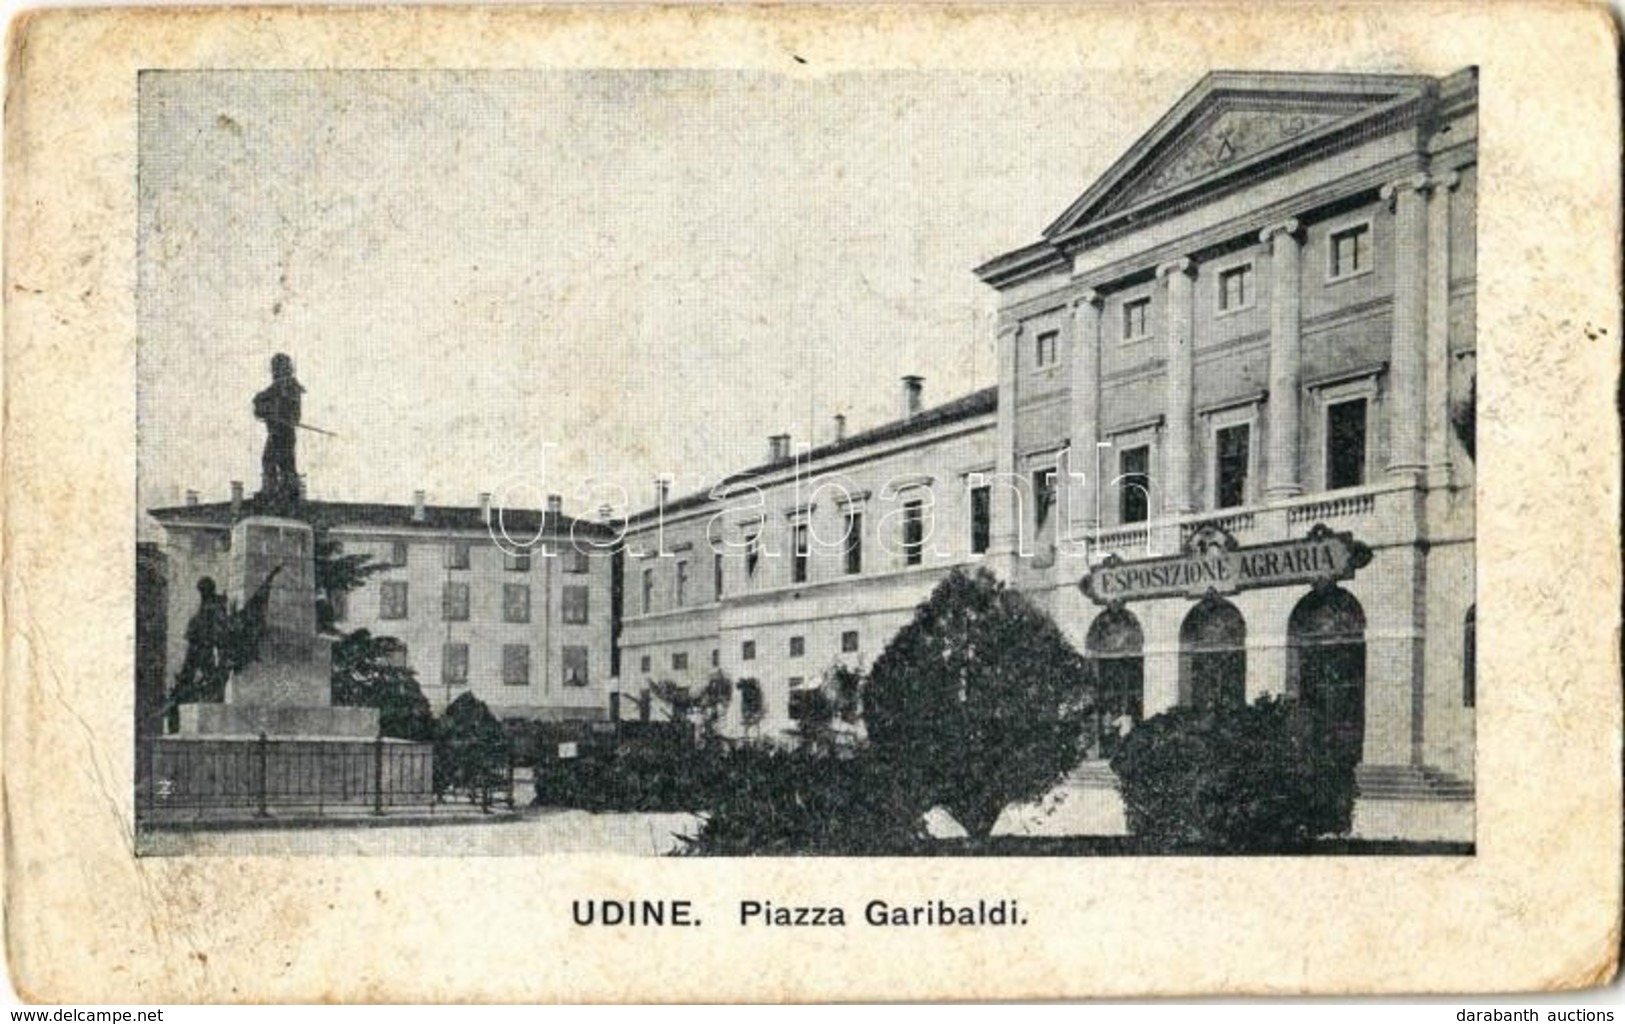 T3 1918 Udine, Piazza Garibaldi, Esposizione Agraria / Square, Agricultural Exhibition (EB) - Non Classificati